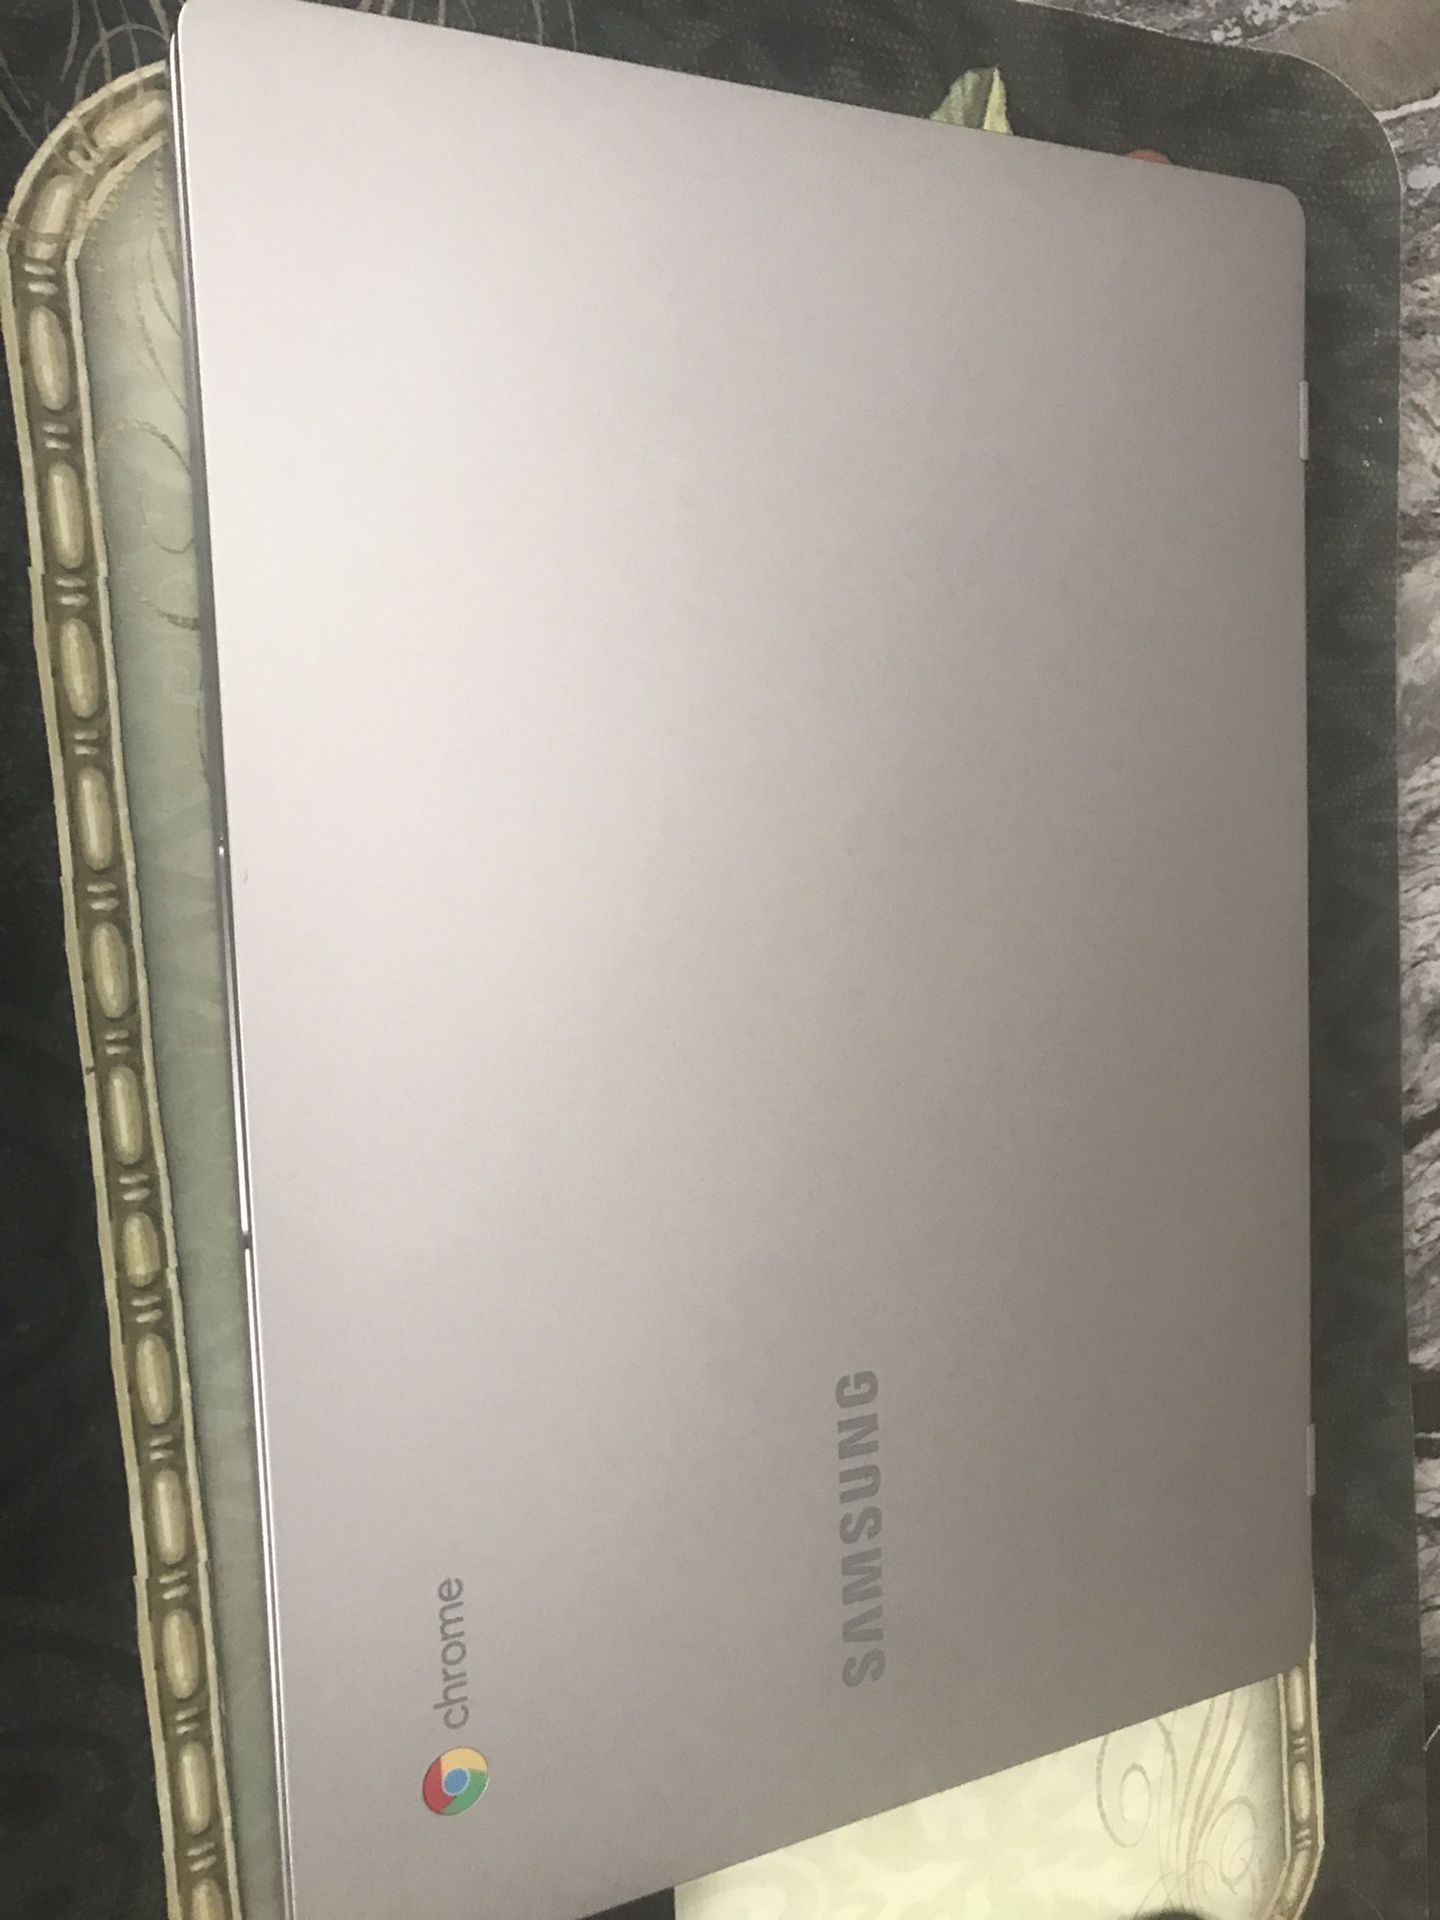 Silver Samsung Chromebook